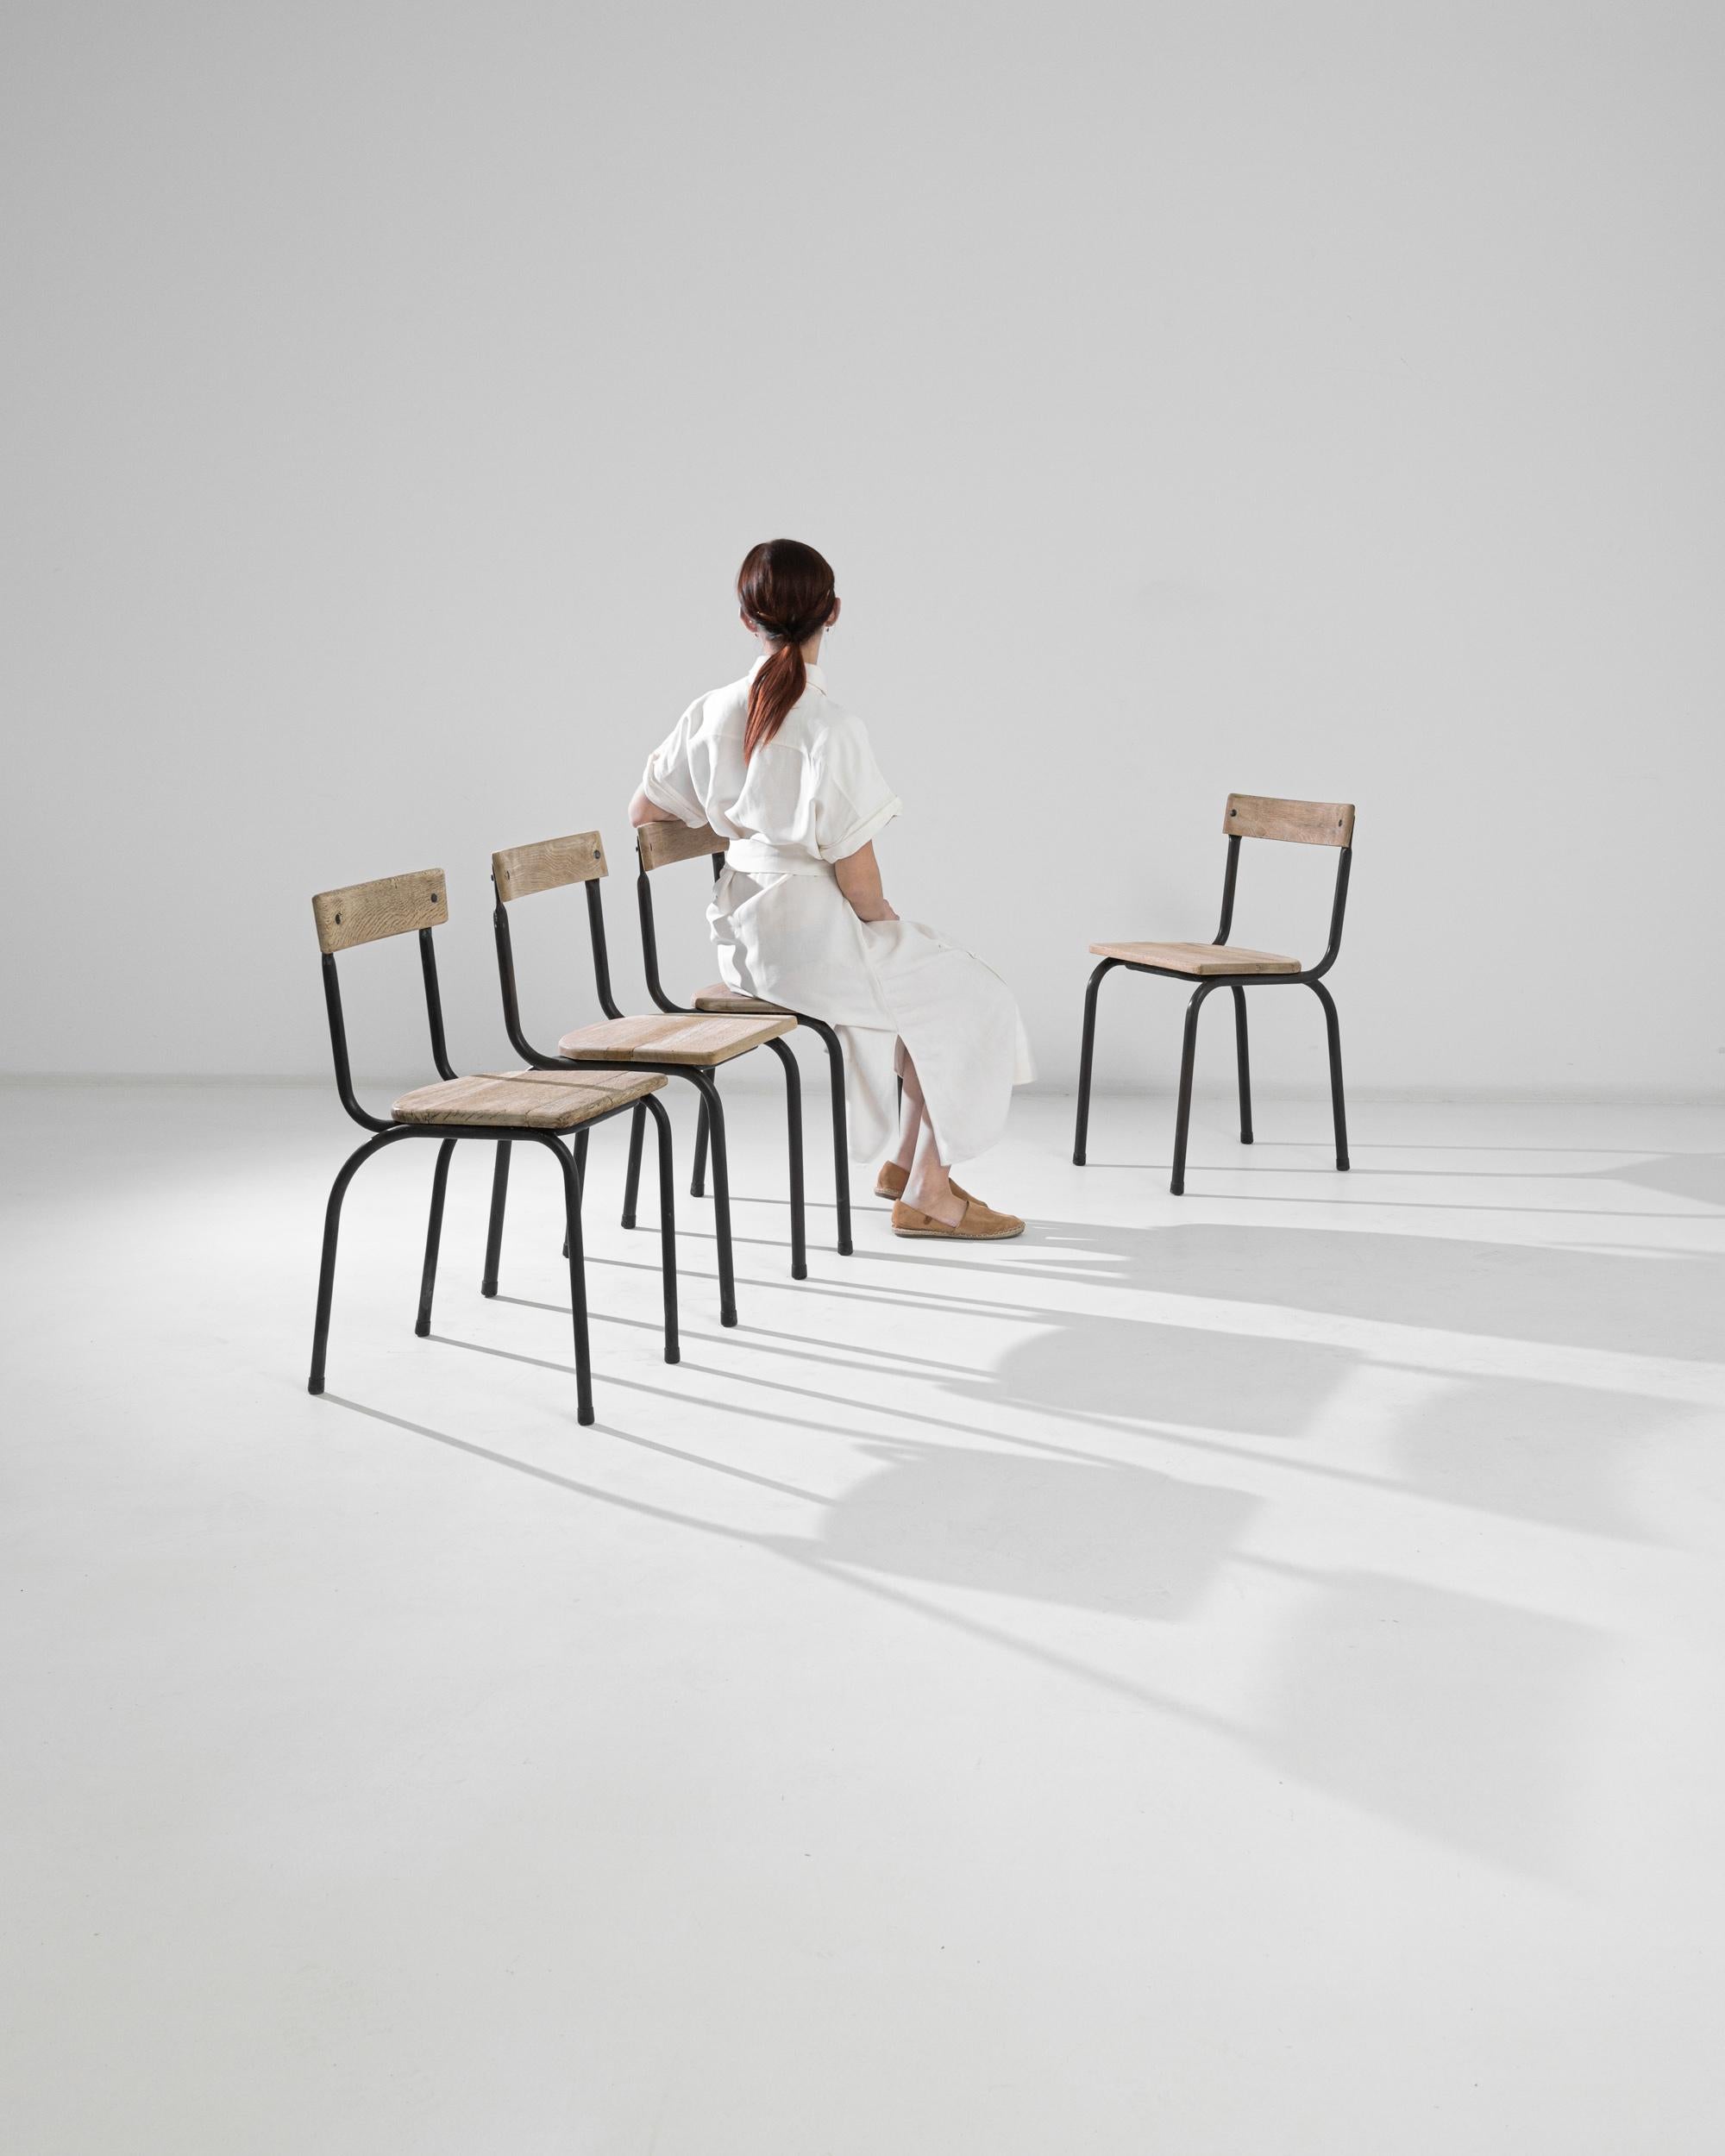 Fabriqué en Belgique vers 1950, cet ensemble de quatre chaises en métal dégage un air de Bauhaus. Fonctionnels et élégants, ils comportent une base tubulaire en métal qui supporte des sièges et des dossiers en bois. Le noir industriel du métal se